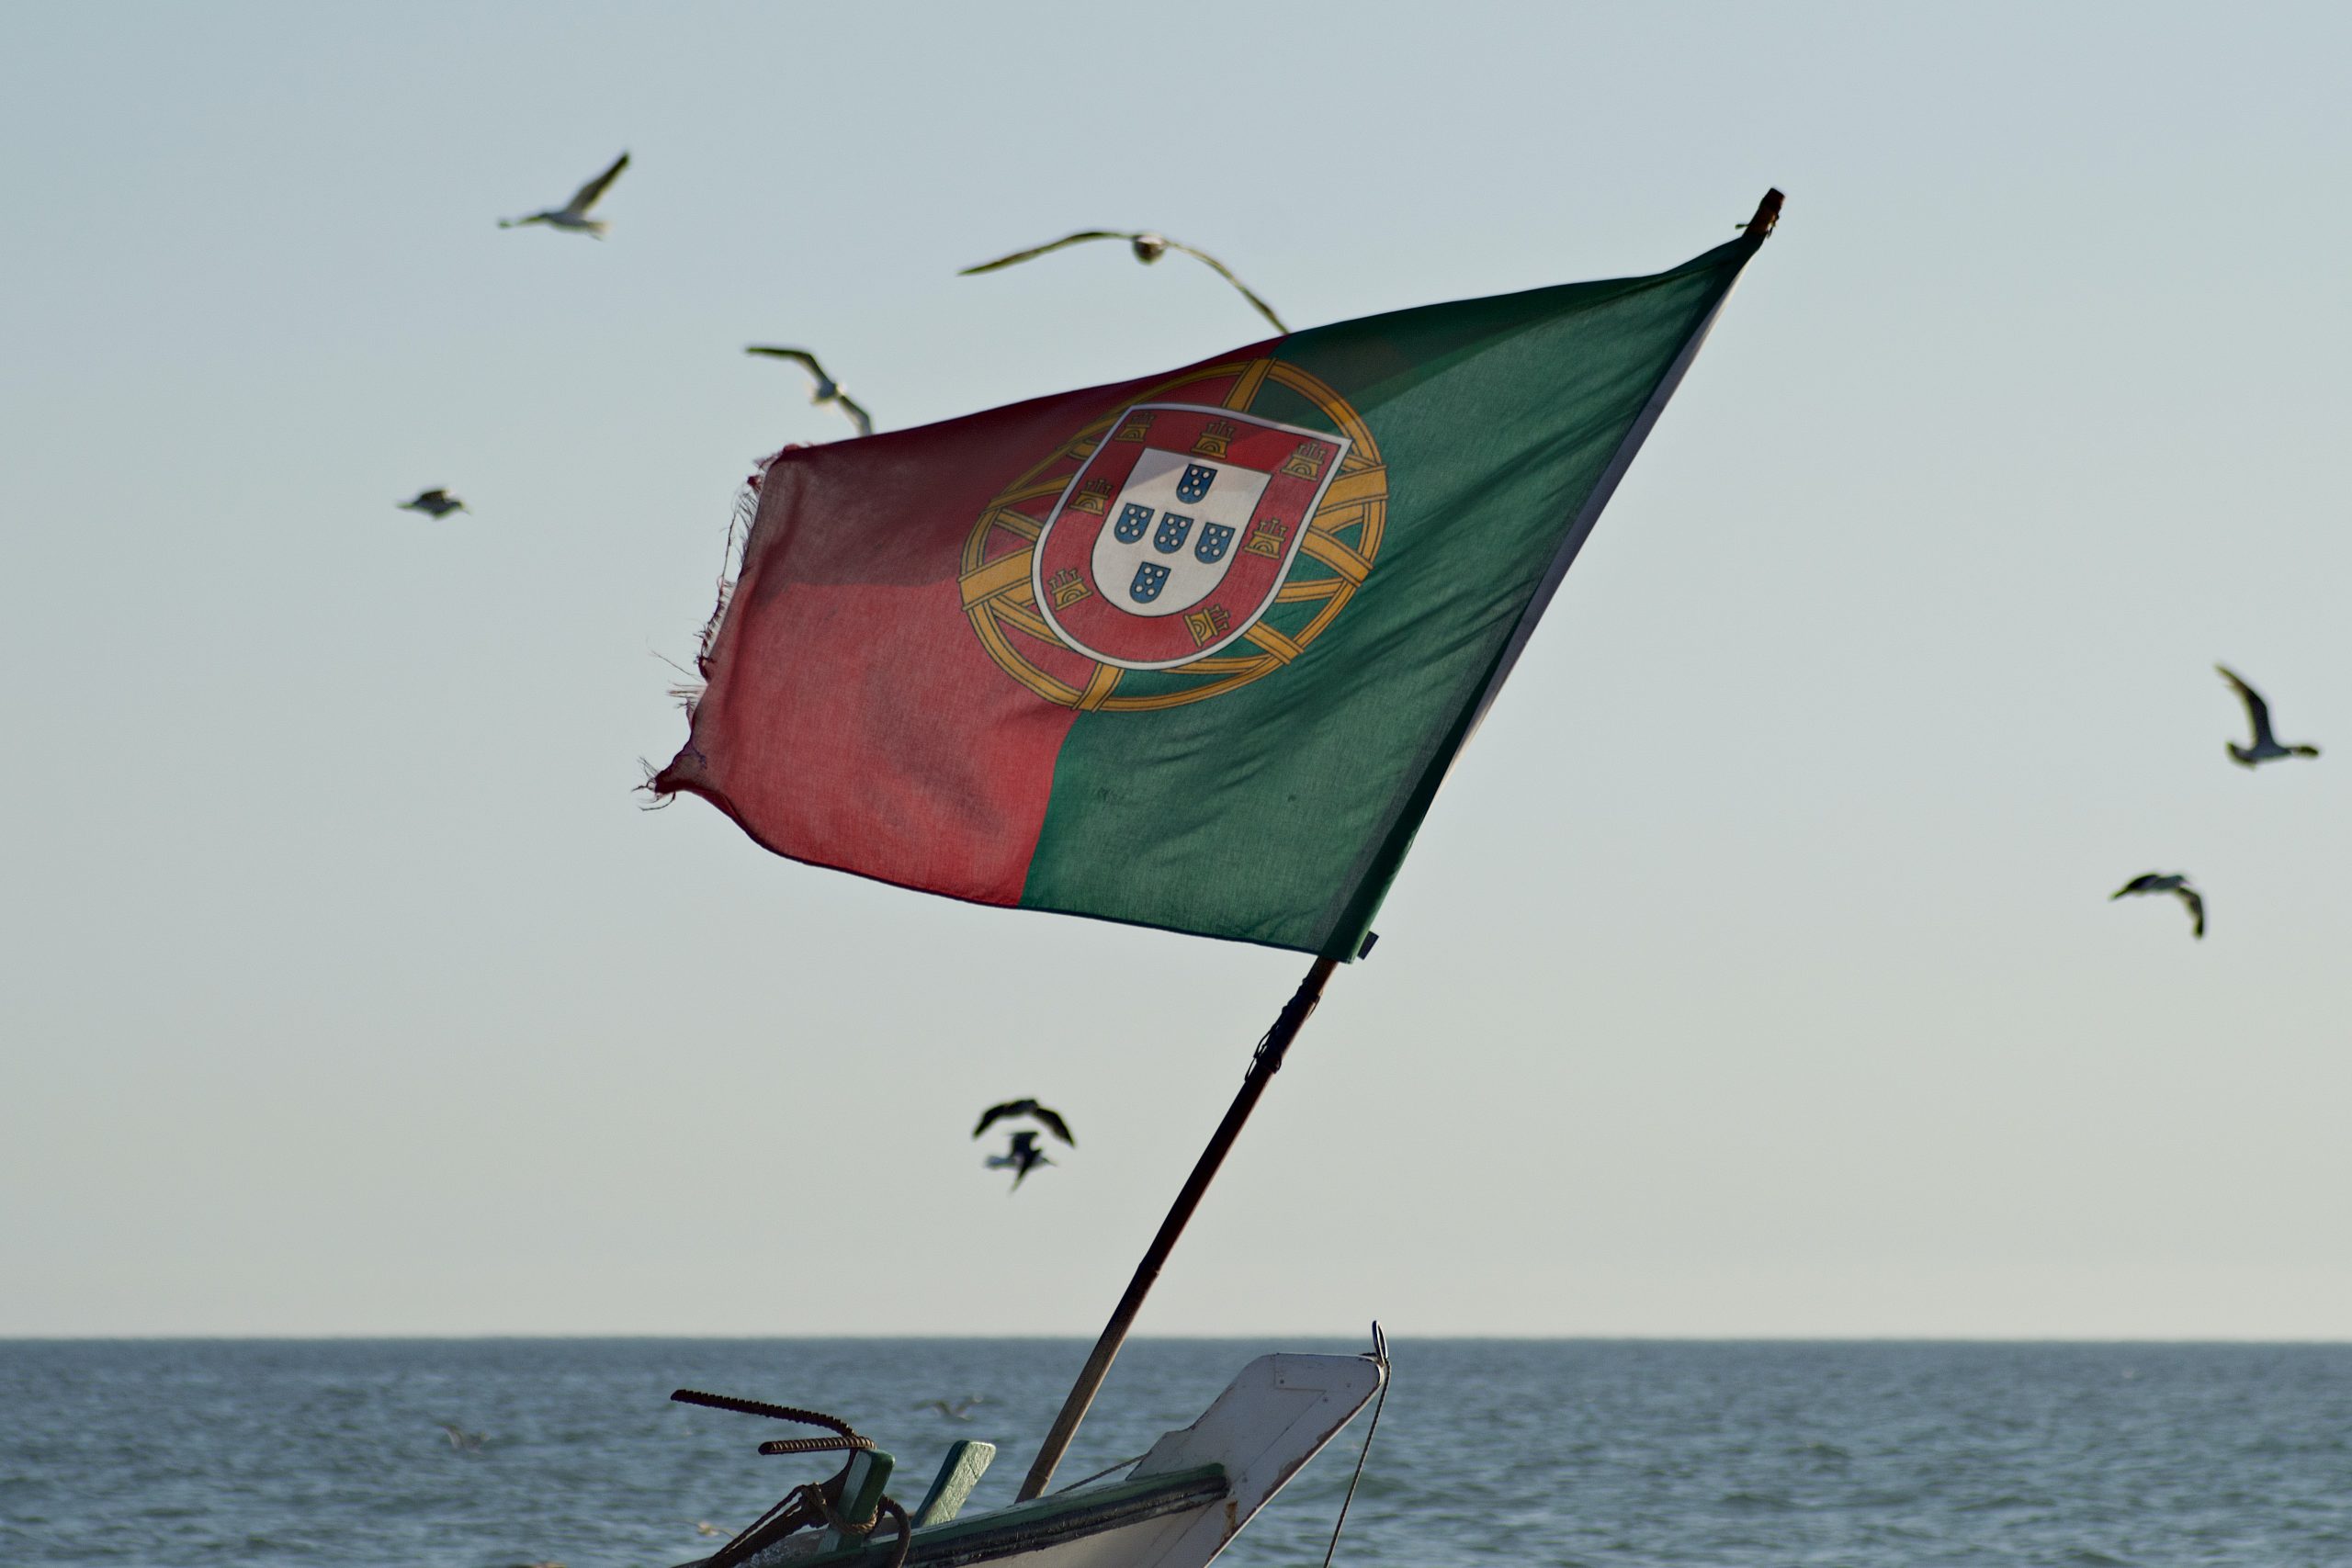 Divisões administrativas de Portugal - Cidades Portuguesas